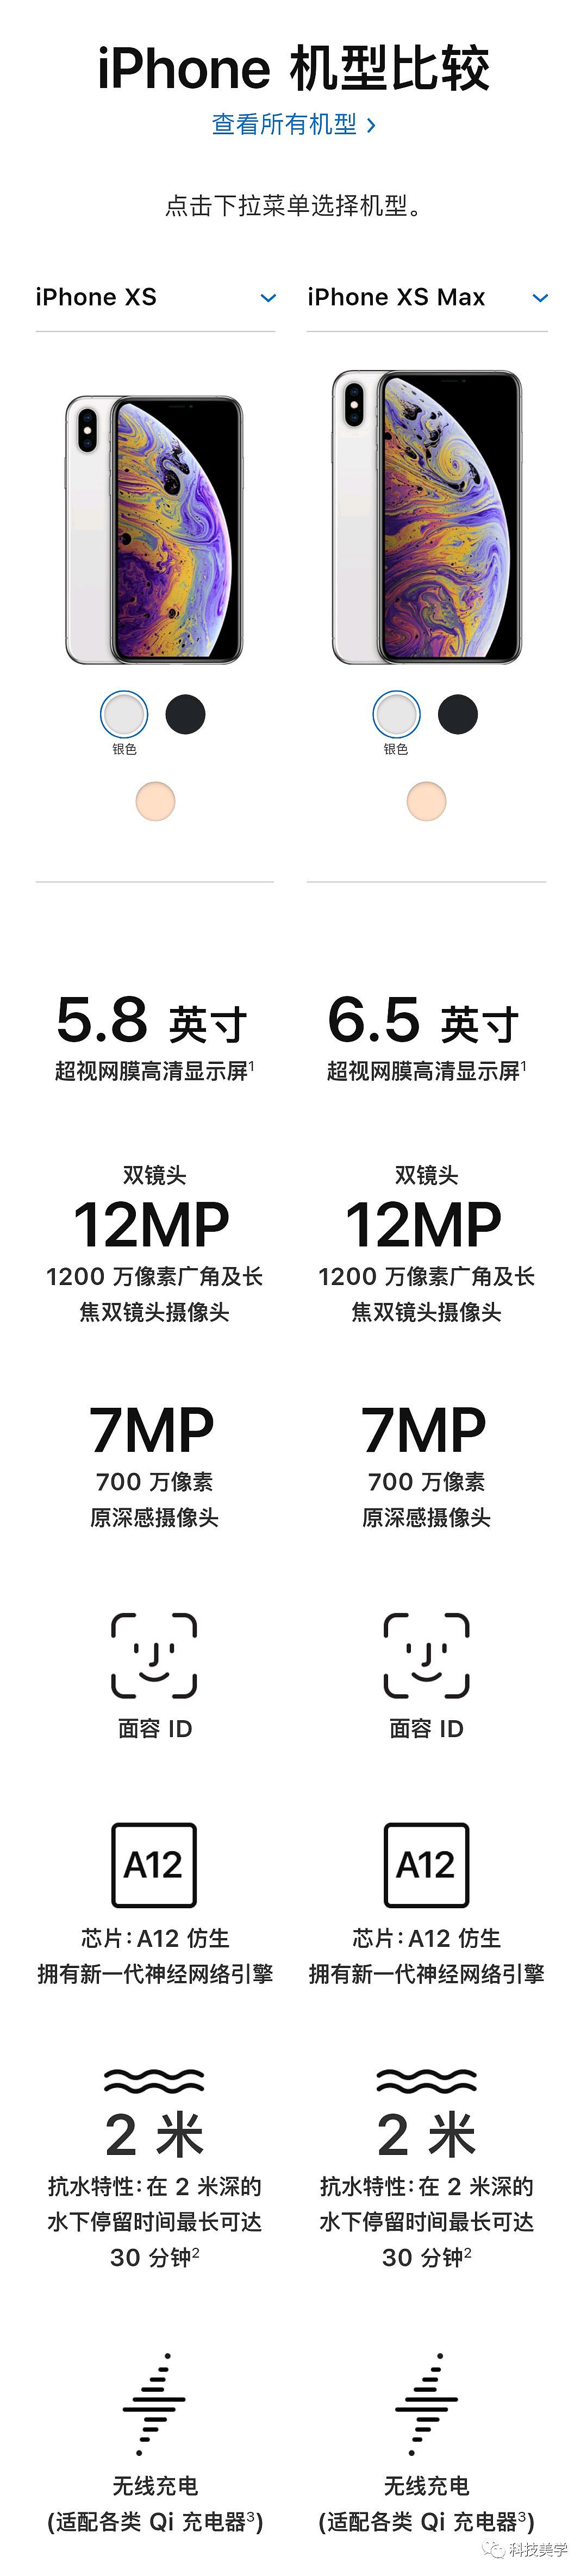 一张图看iphoneXs和iPhone Xs Max详细规格对比 - 1